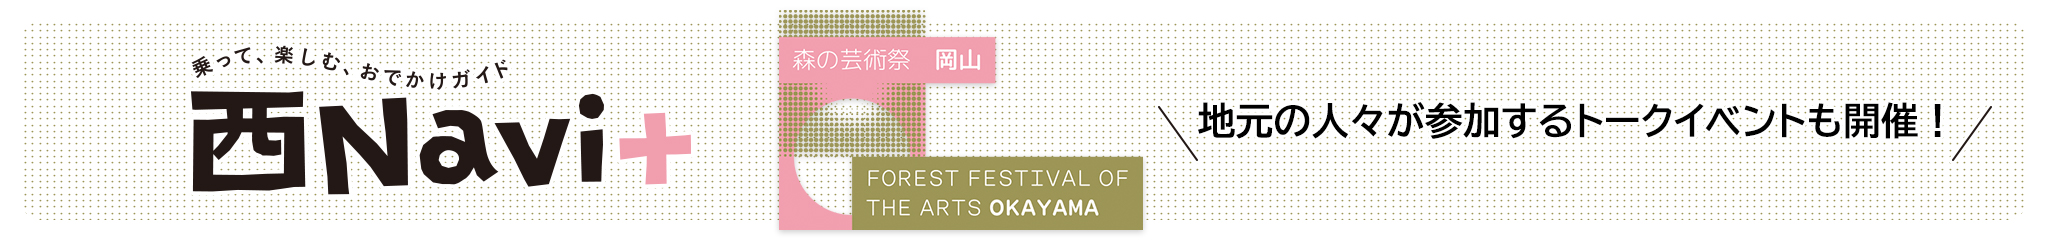 岡山県北部で開催される国際芸術祭「森の芸術祭 晴れの国・岡山」を西Navi+（プラス）では連載にて紹介します。（掲載月は不定期）